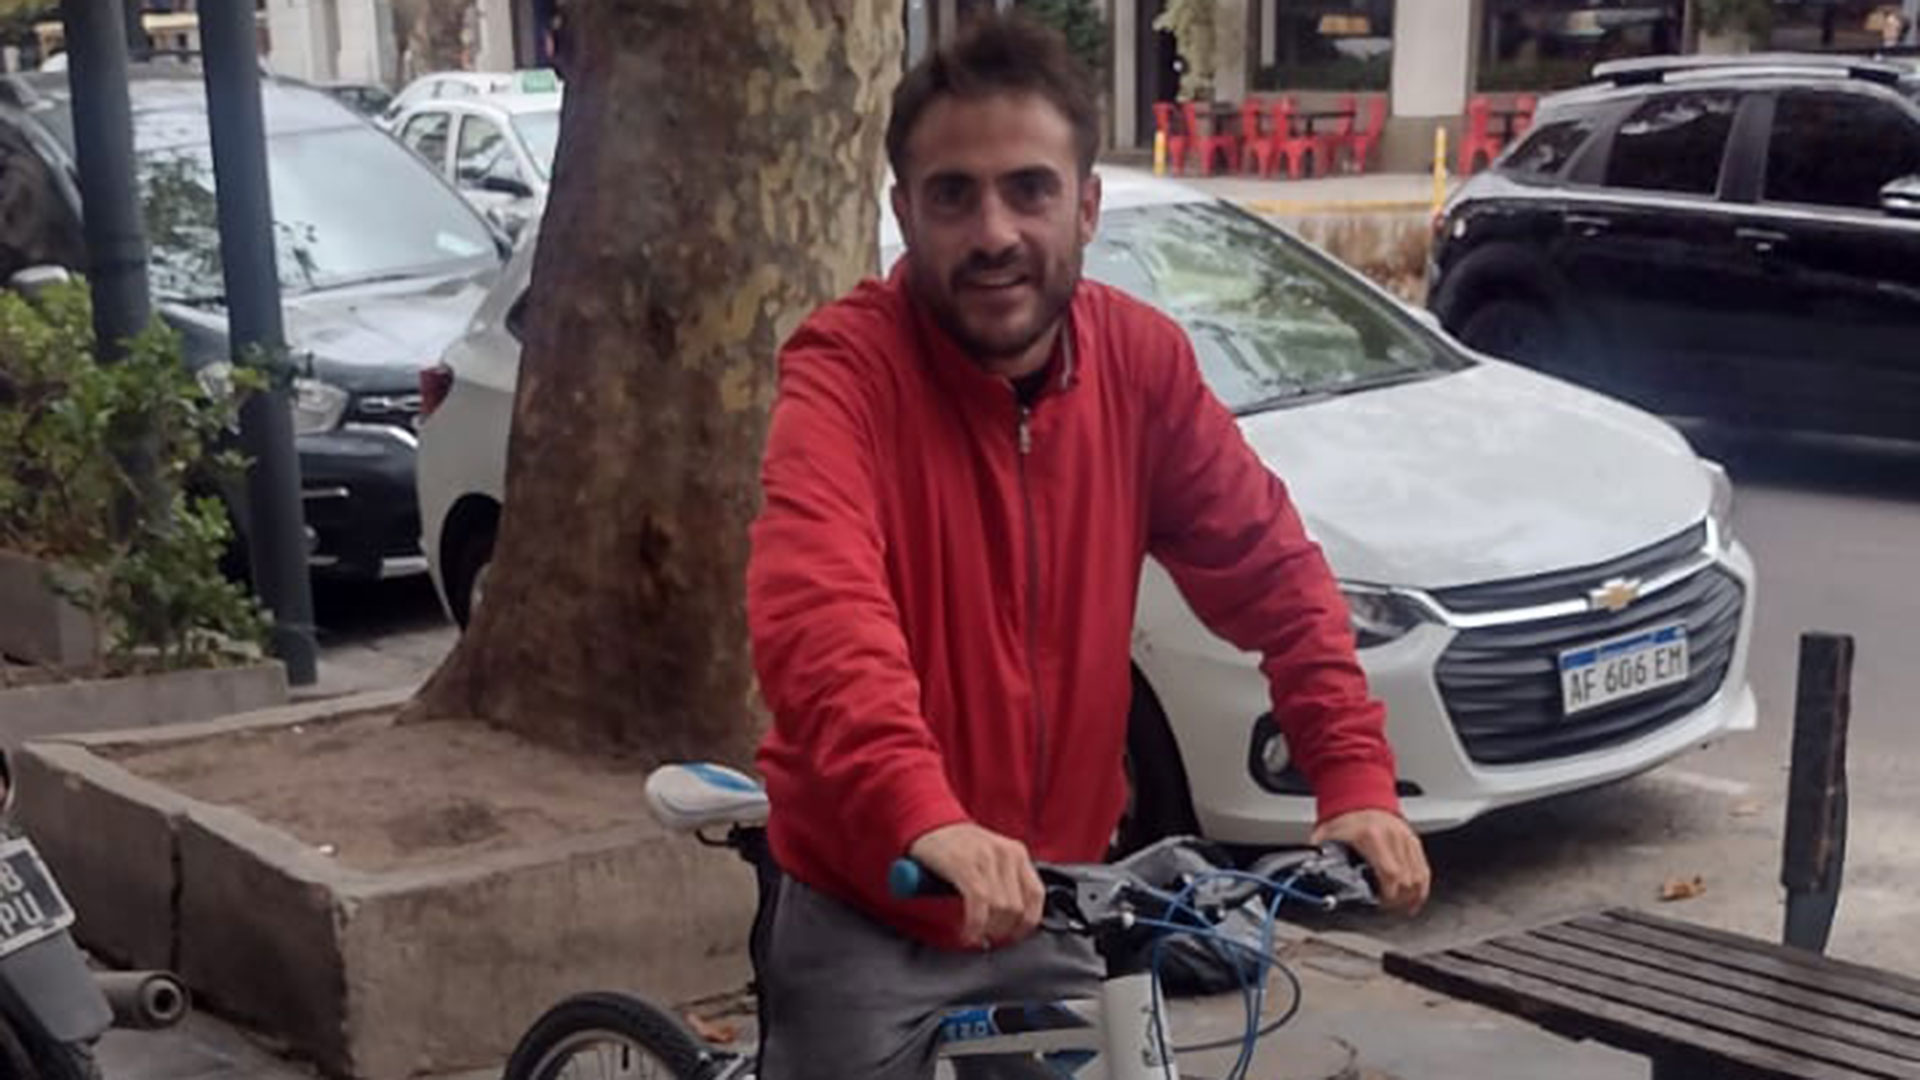 Nicolás Alejandro Gómez hoy tiene 32 años. Es delivery de una aplicación y vive solo en La Plata